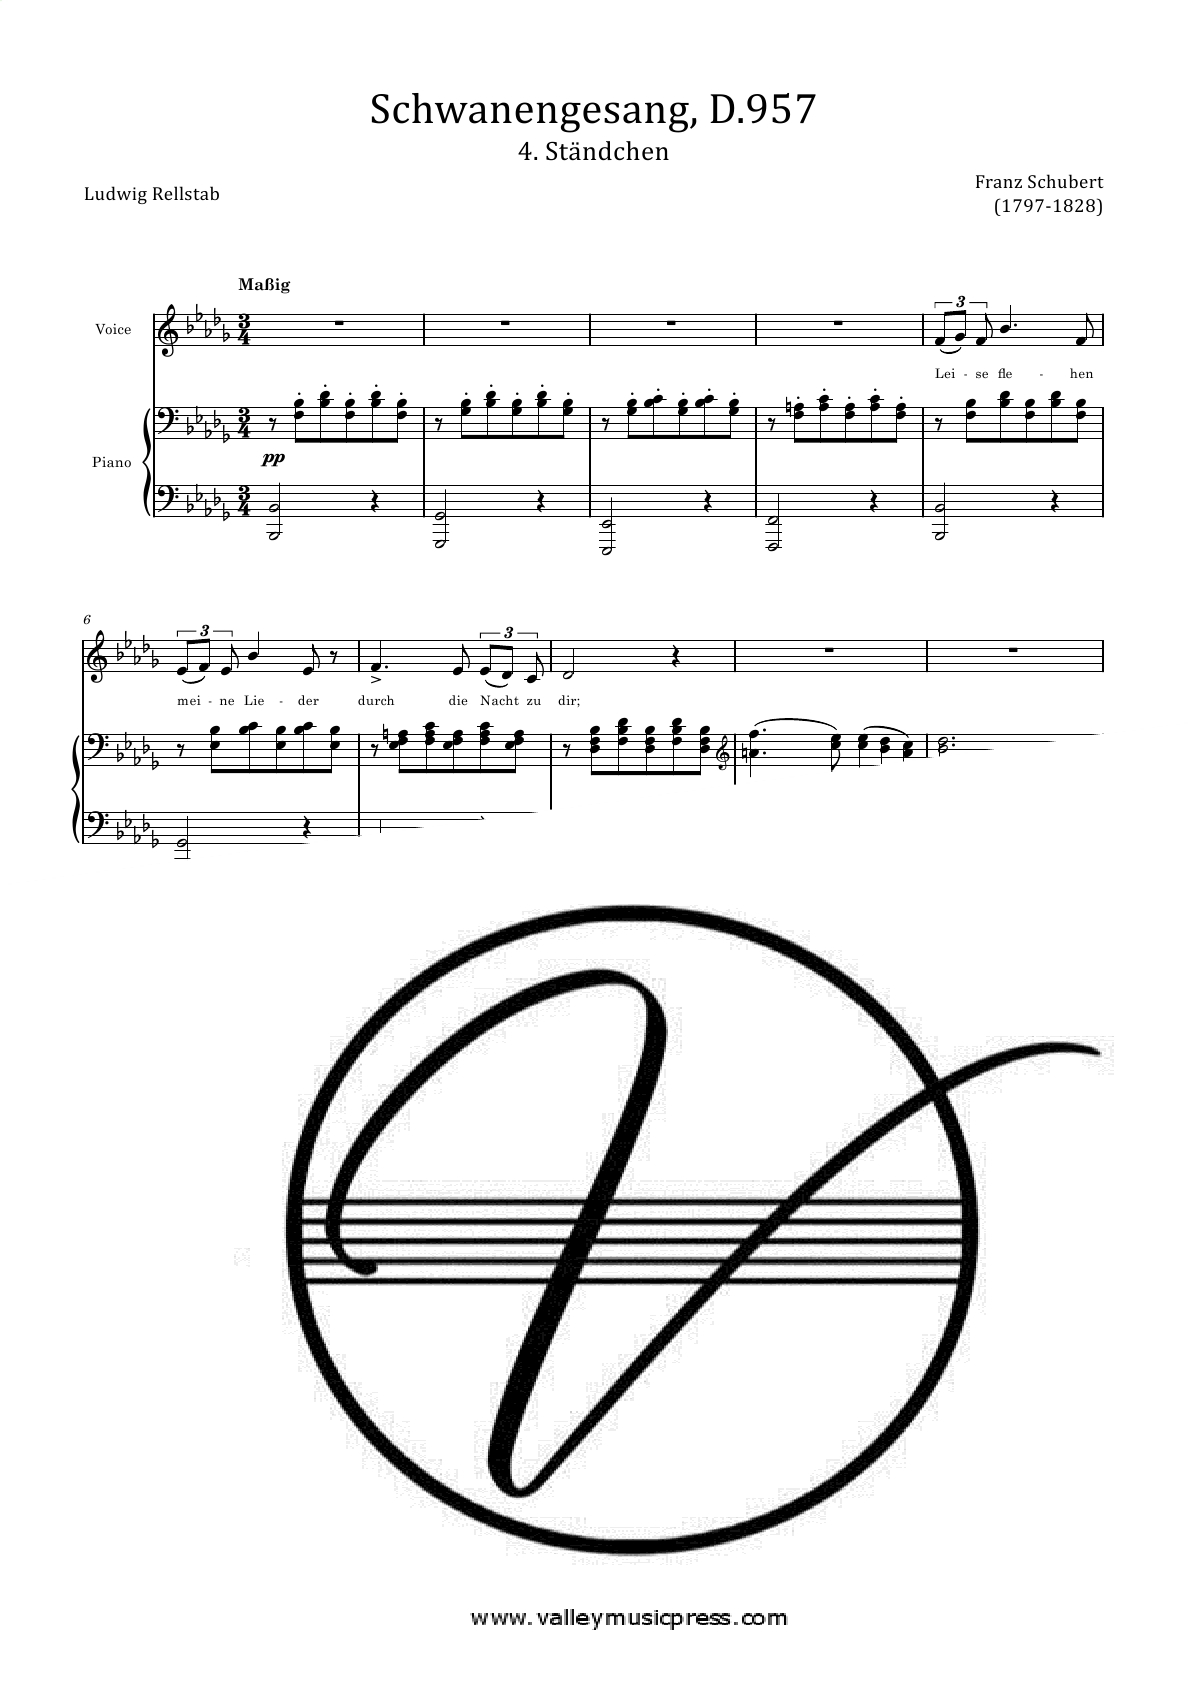 Schubert - Schwanengesang Standchen Serenade D 957 No. 4 (Voice) - Click Image to Close